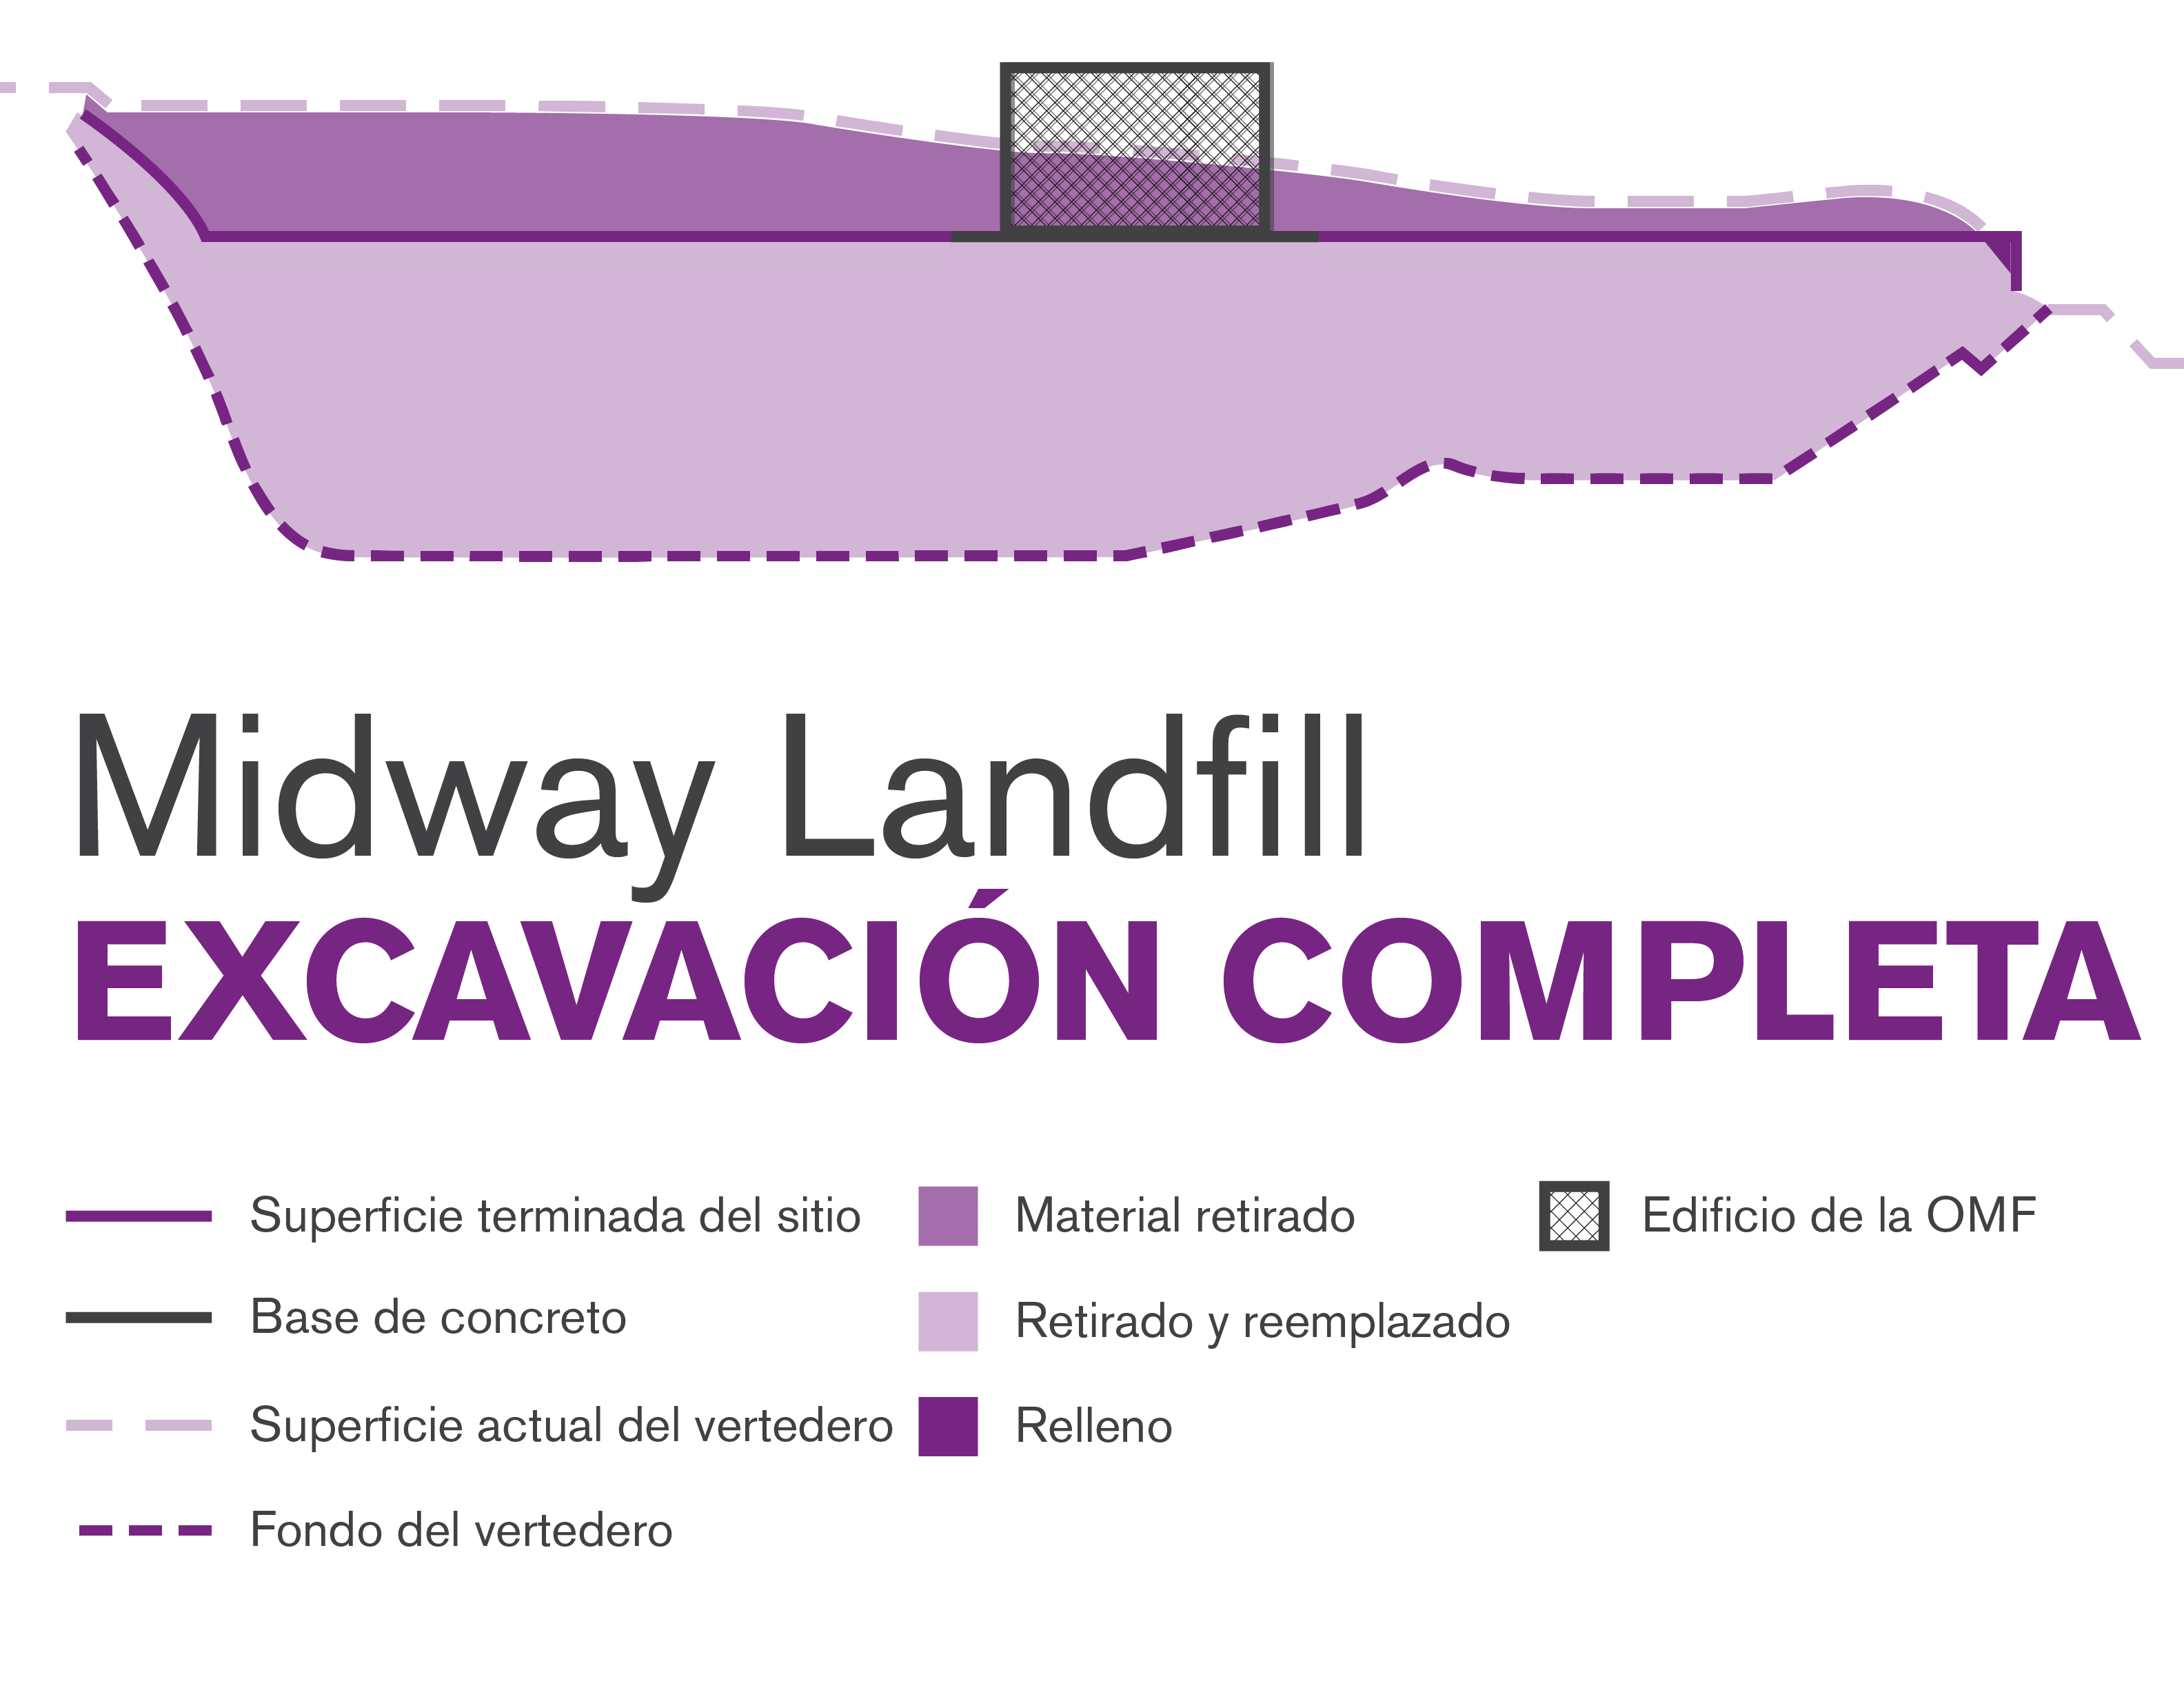 Ilustración gráfica del método de construcción con excavación completa de Midway Landfill